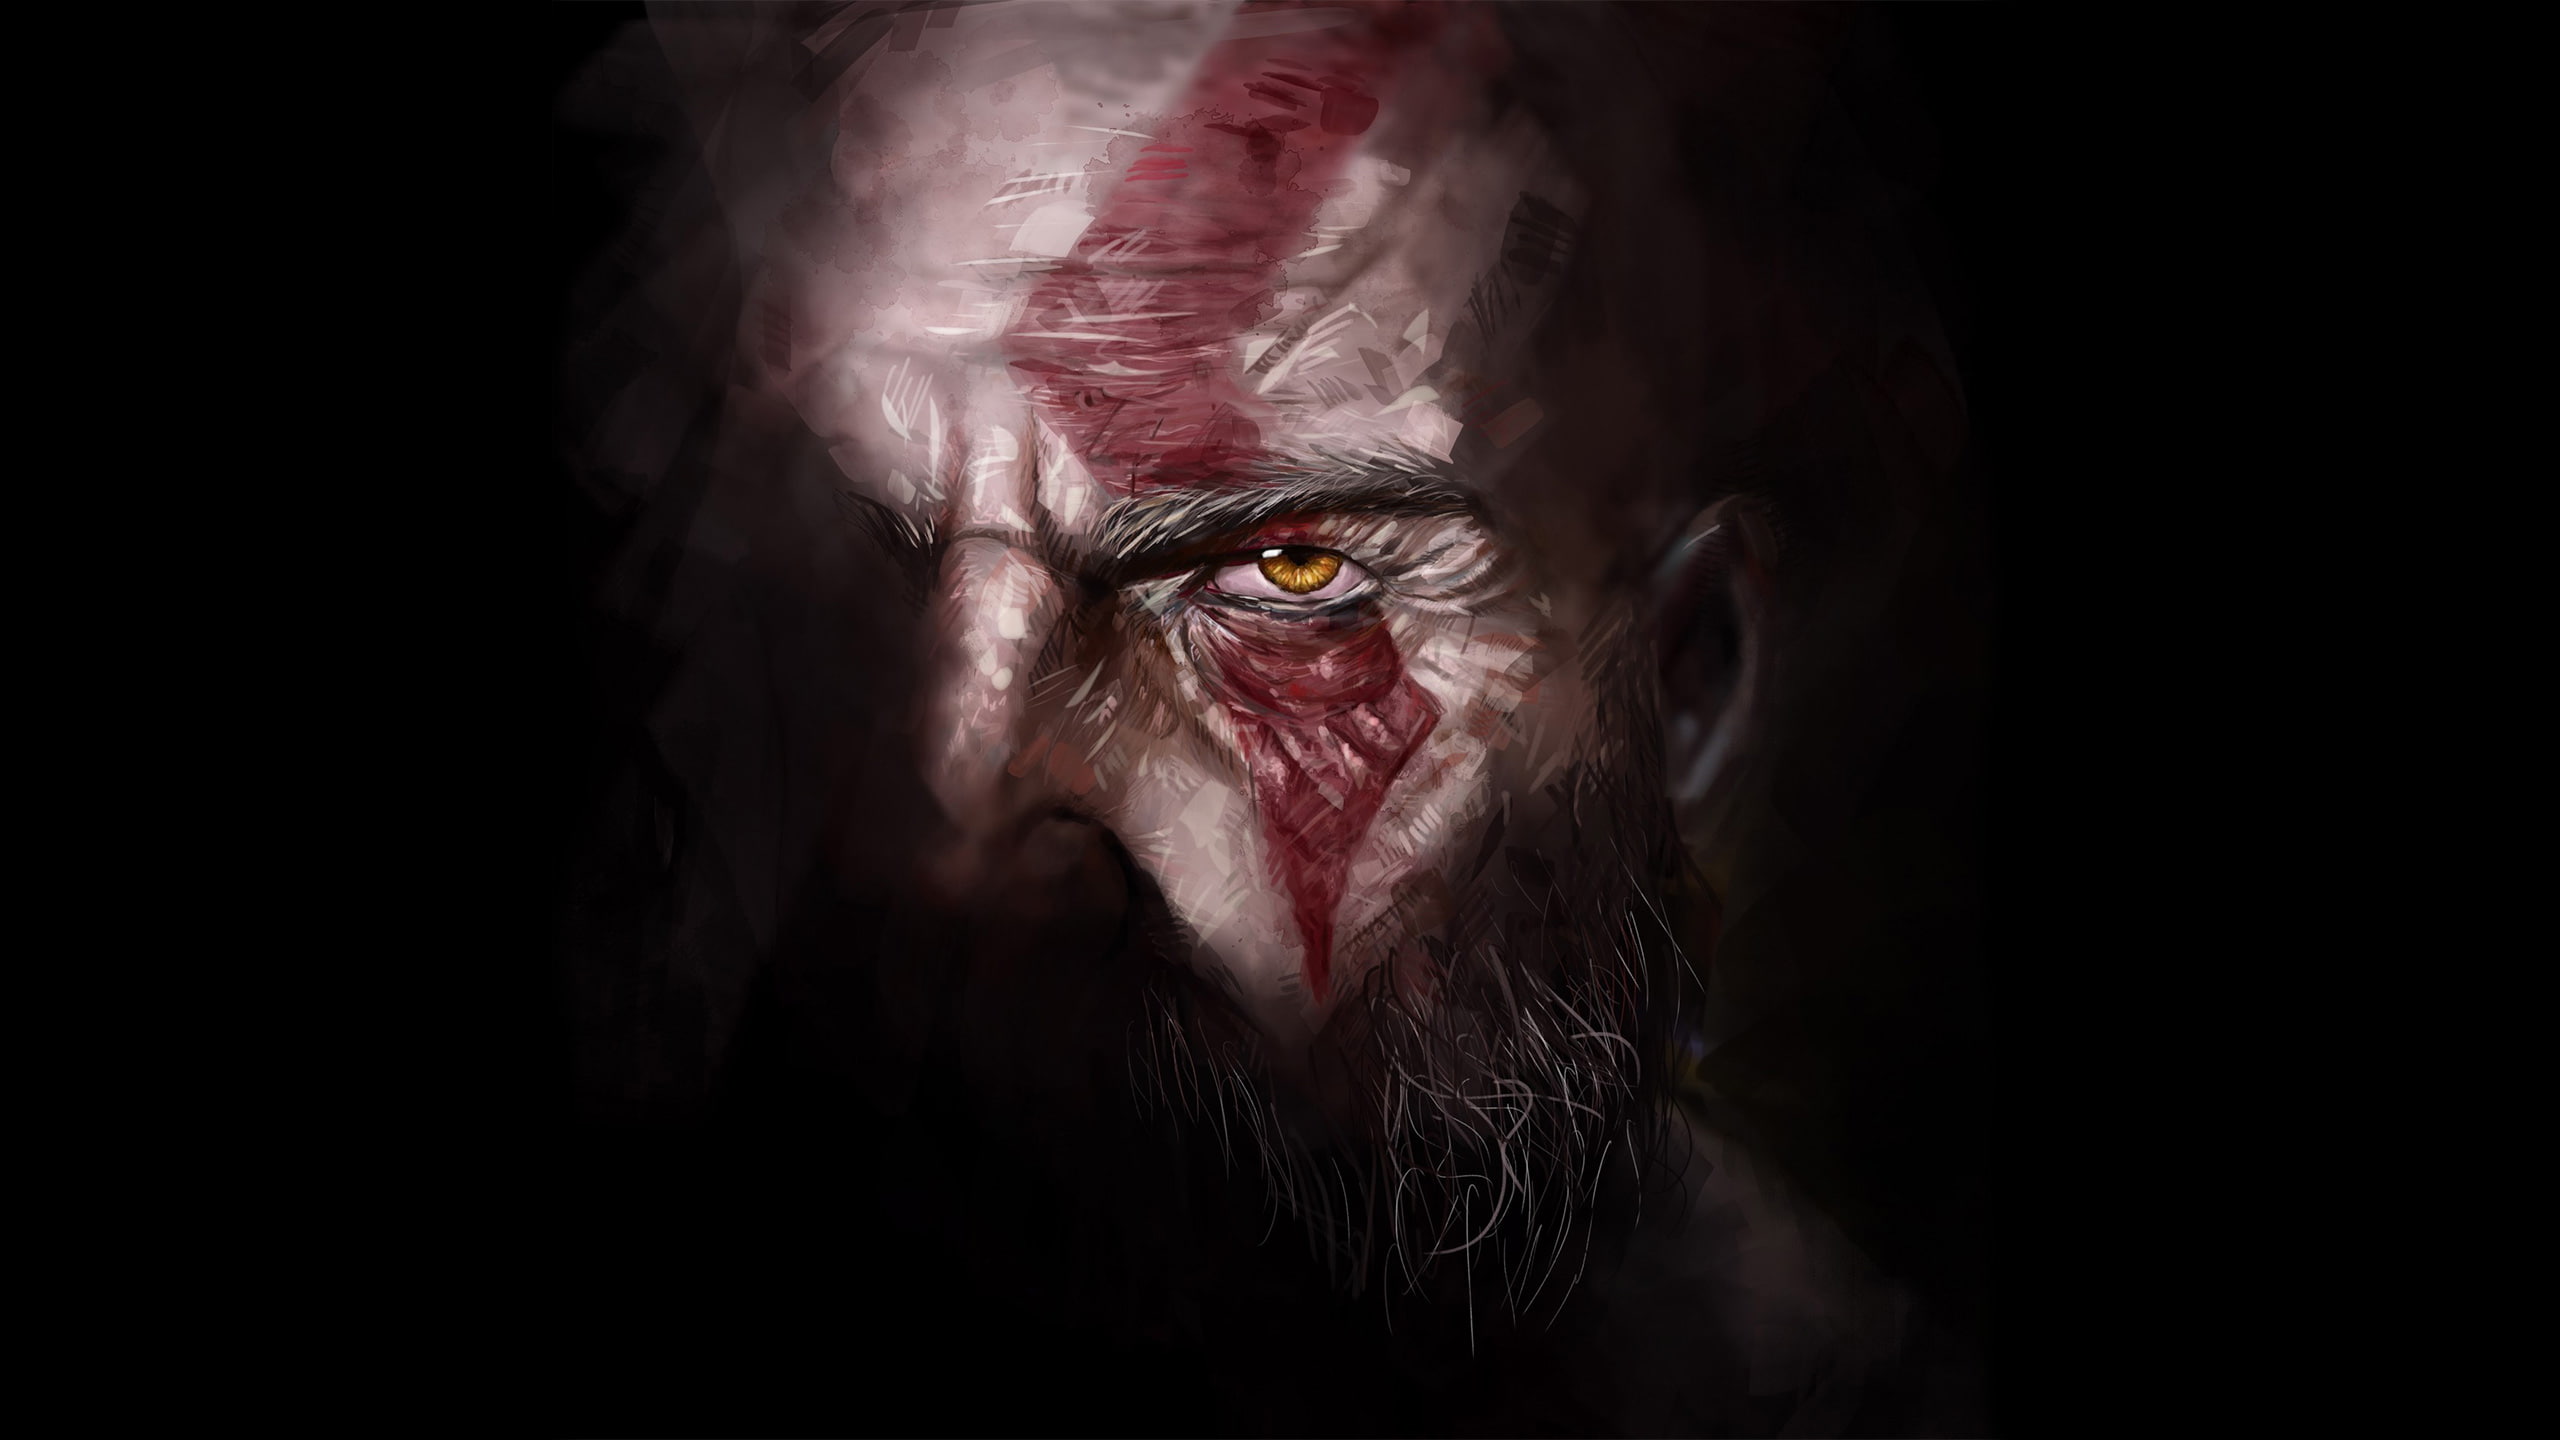 kratos, god of war 4, games, hd, artwork, artist, digital art